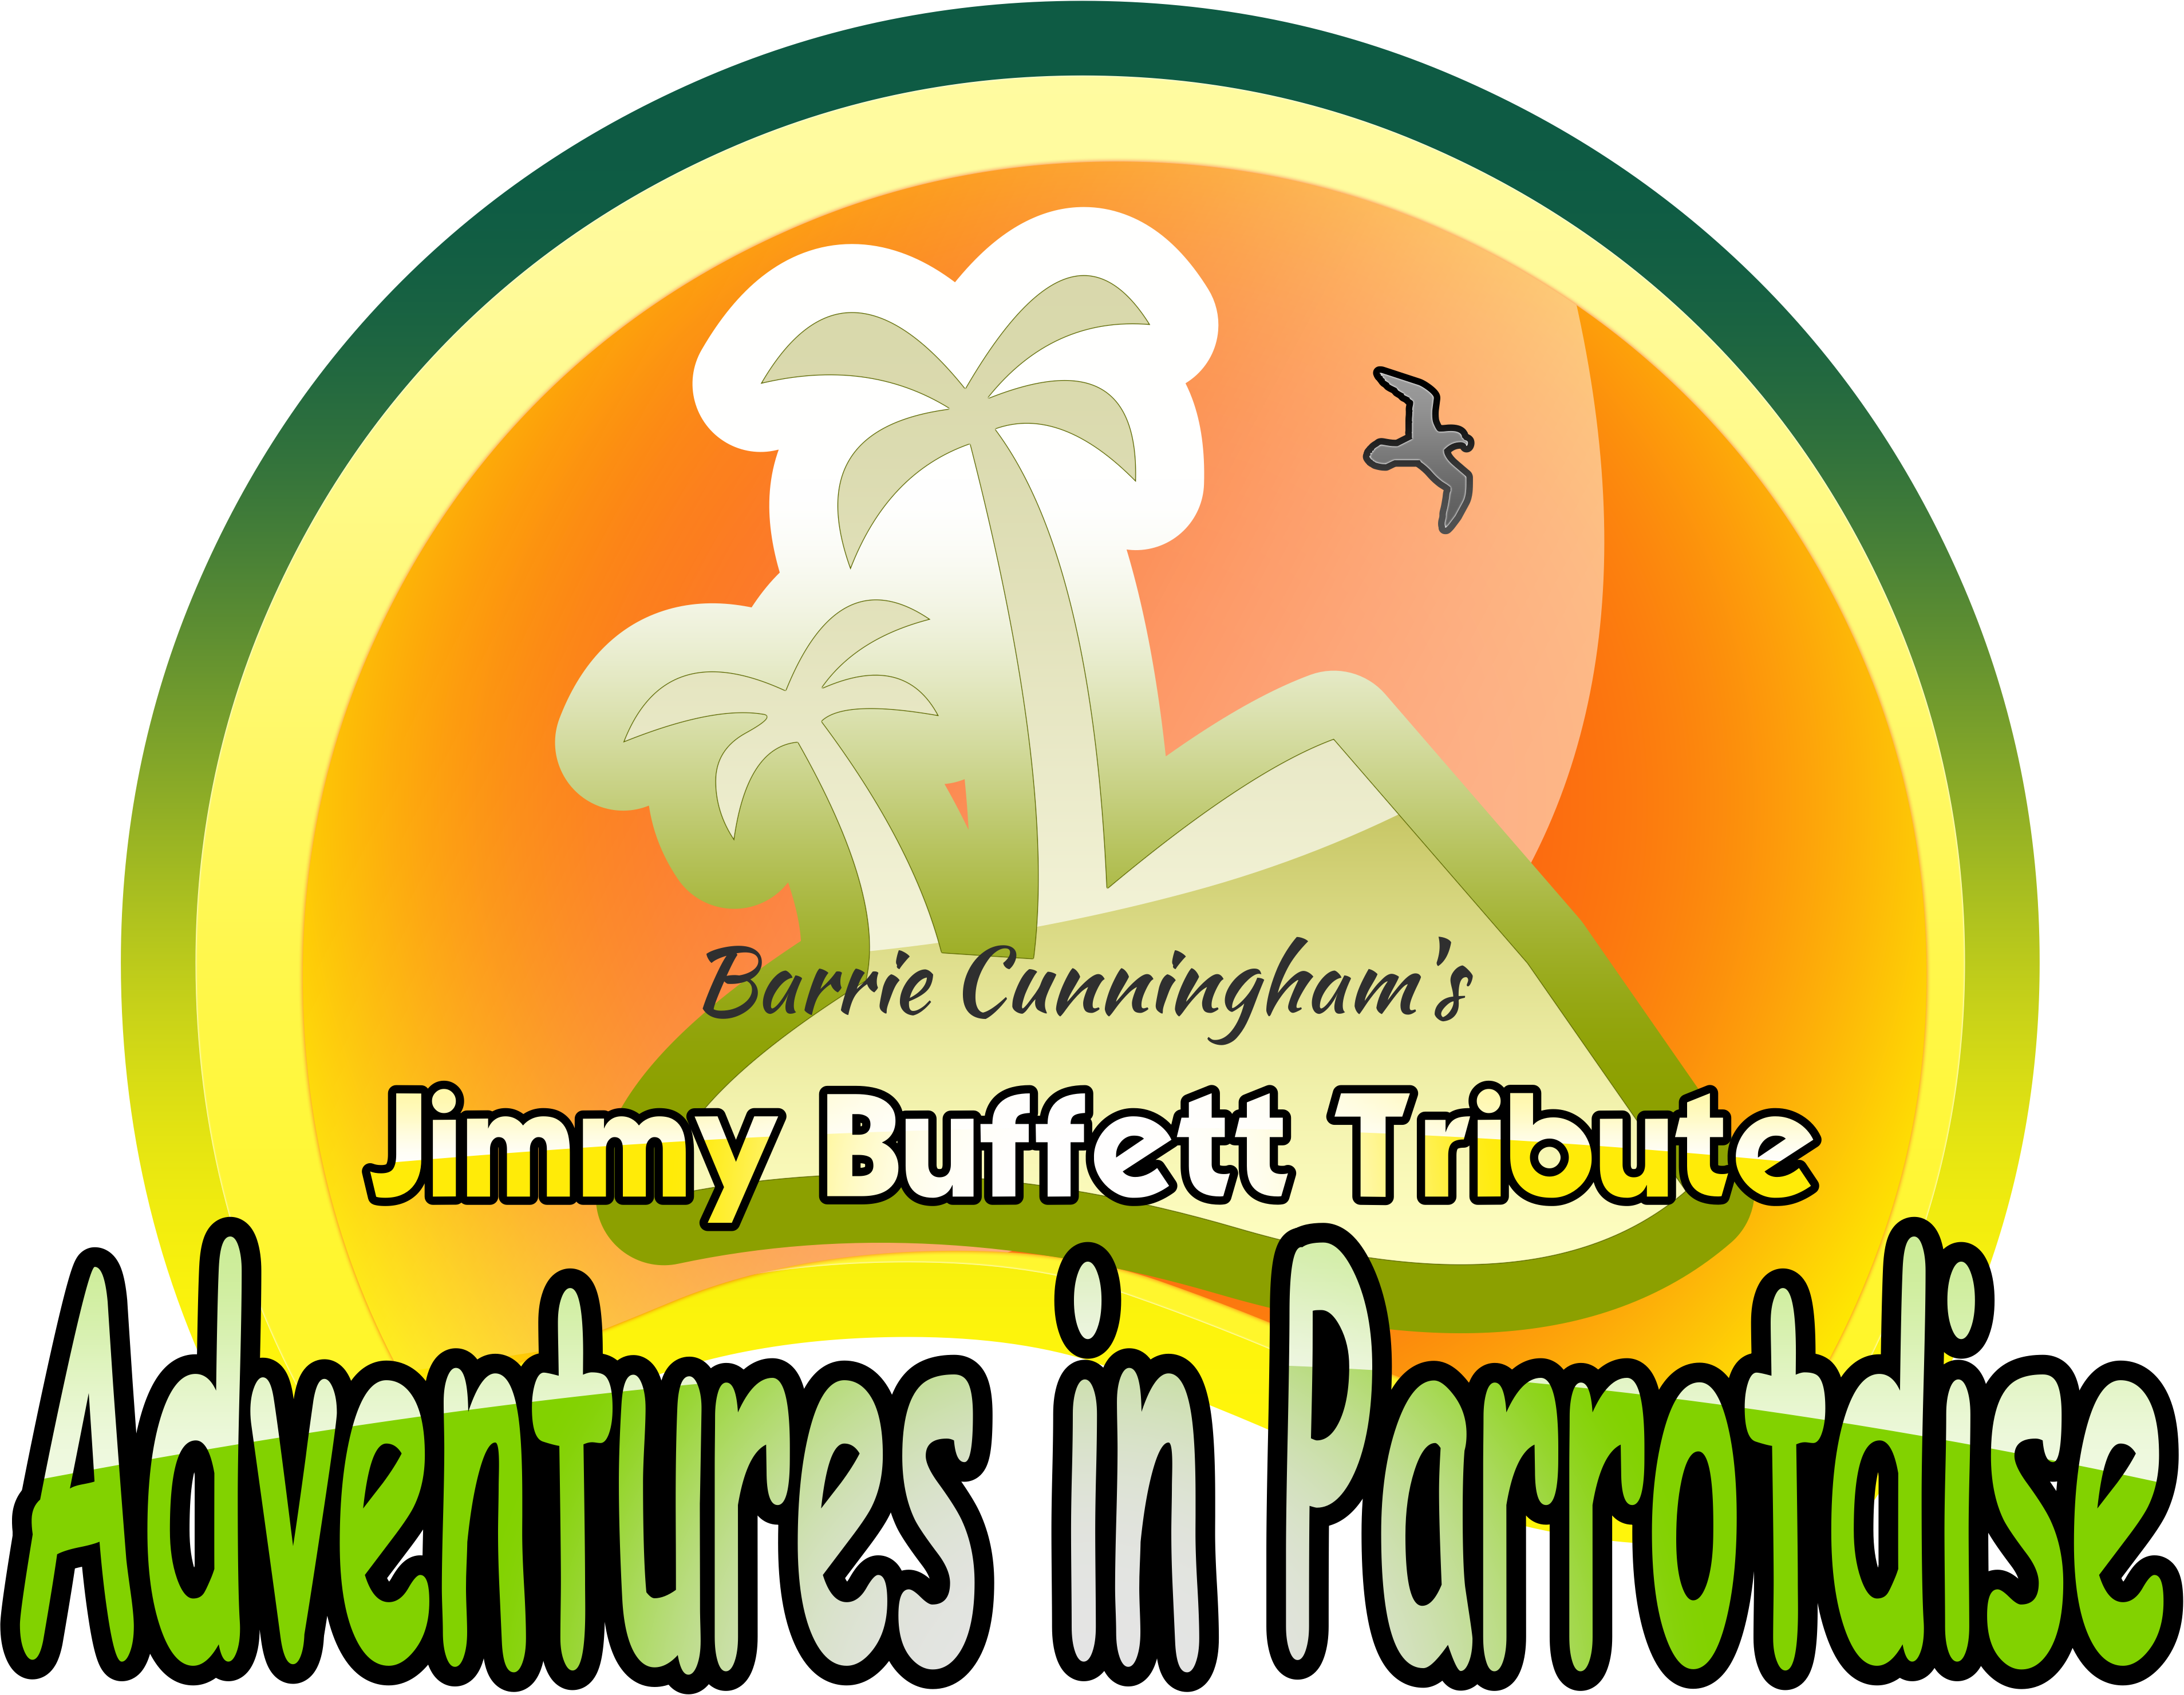 Adventures in Parrotdise